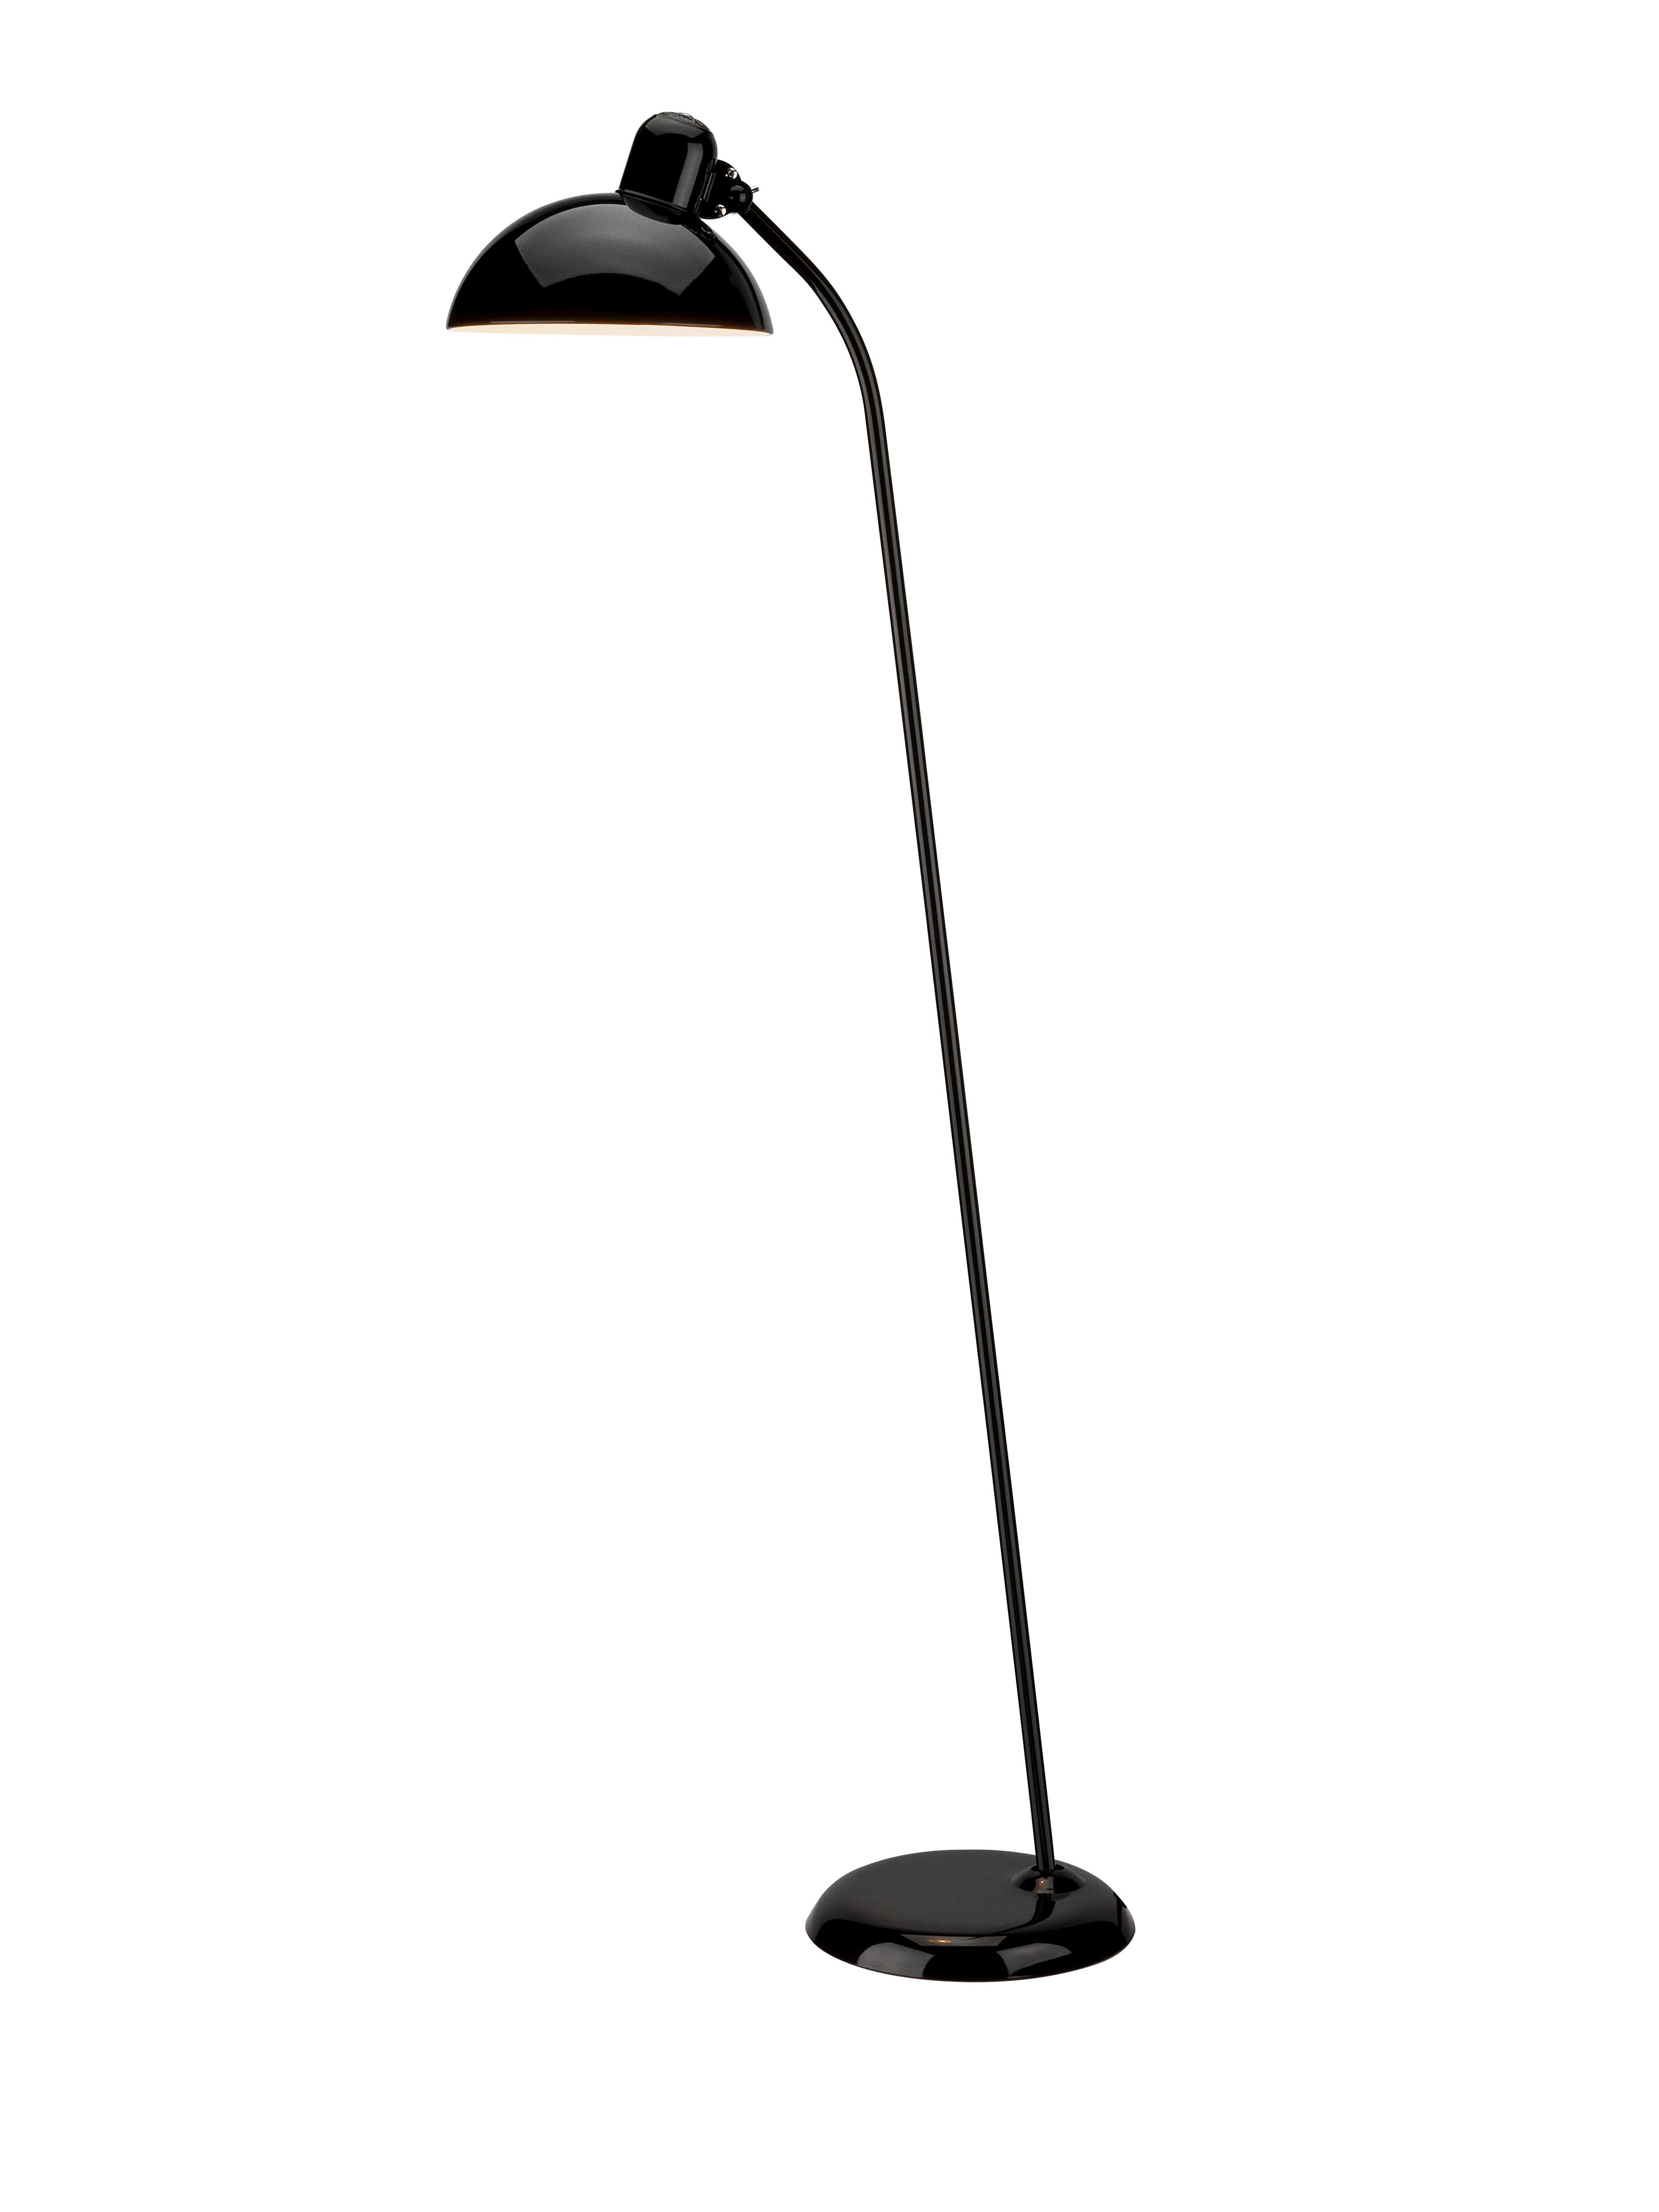 Christian Dell 'Kaiser Idell 6556-F' Floor Lamp for Fritz Hansen in Glossy White For Sale 11